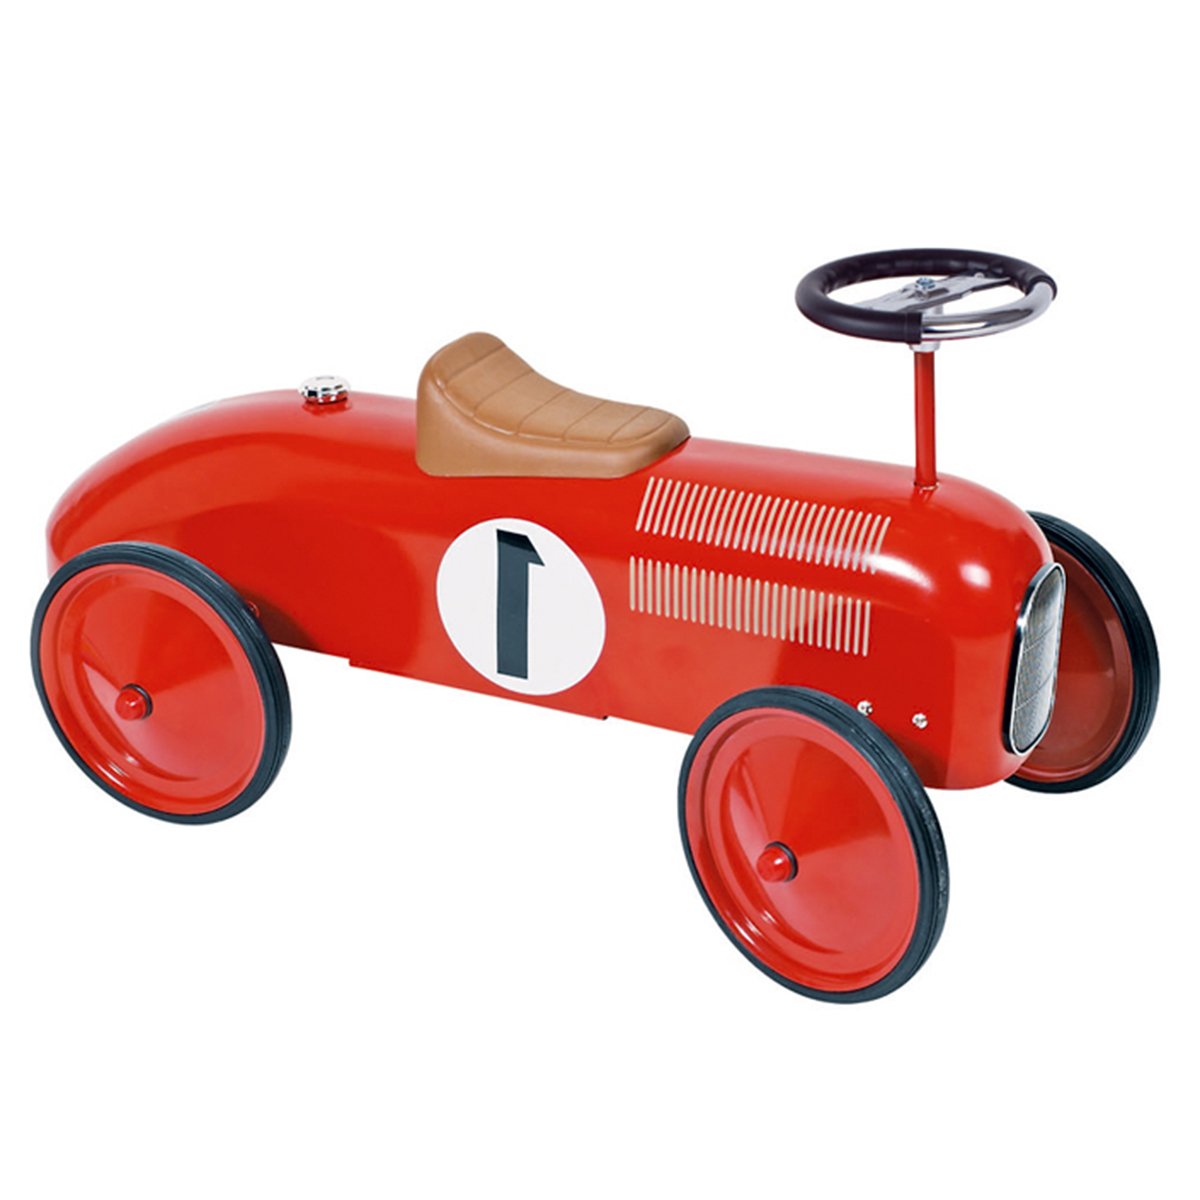 Porteur métal voiture de course vintage rouge - OOGarden